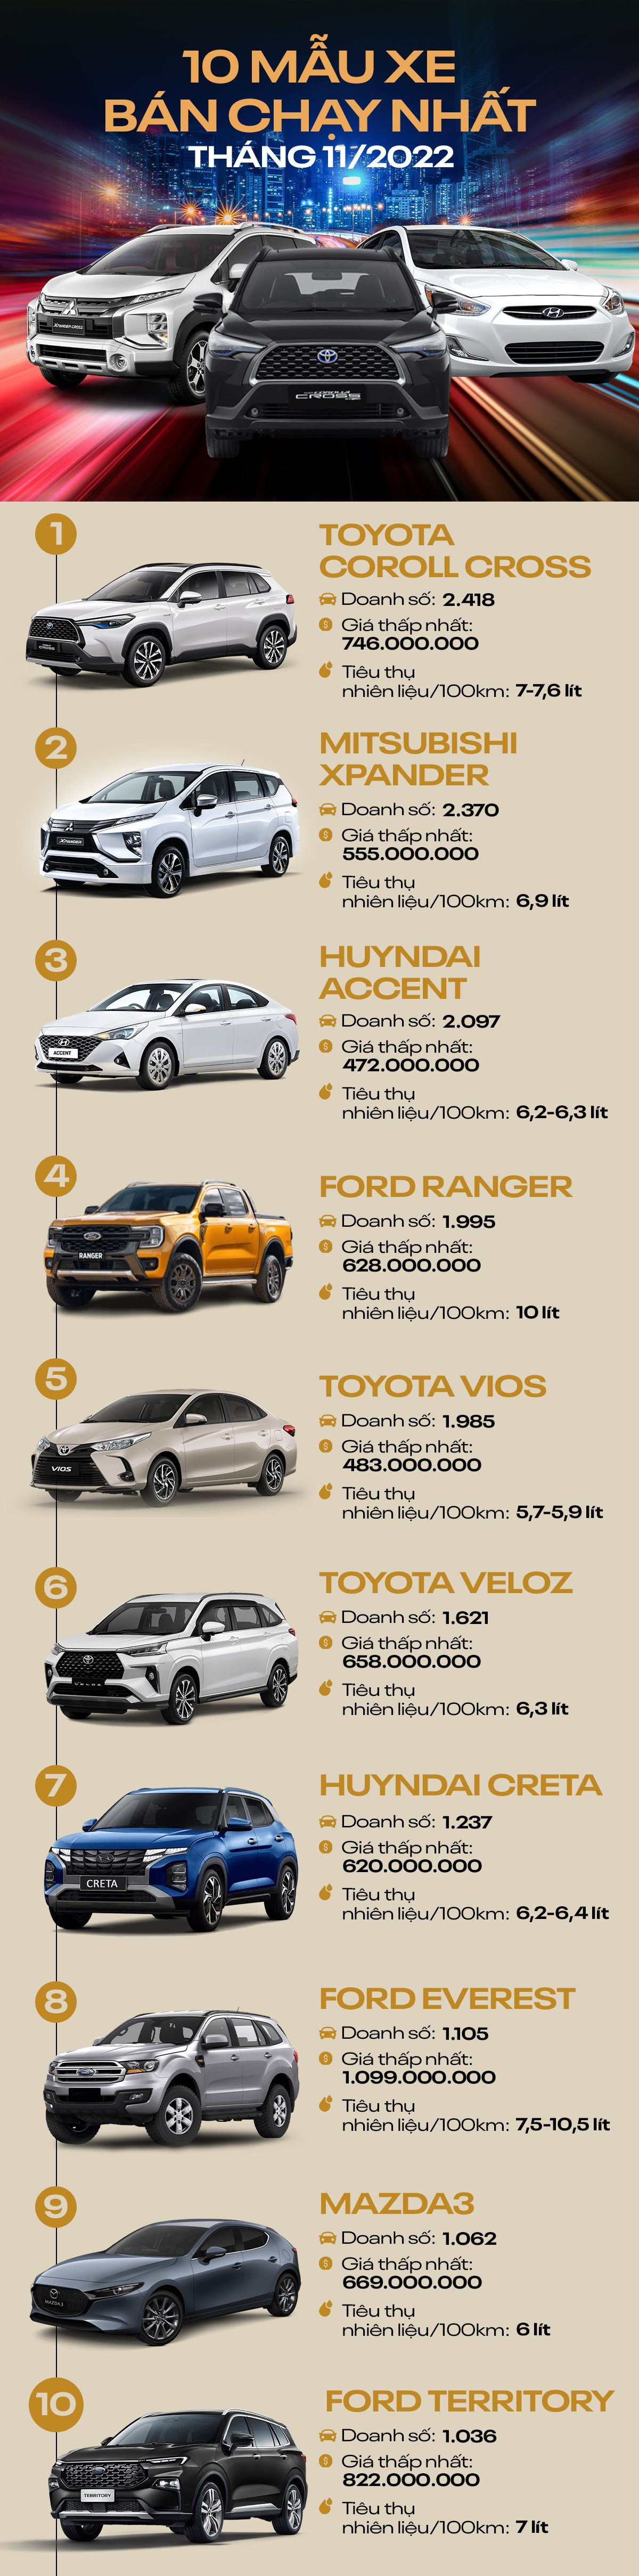 [Infographic] 10 mẫu ô tô bán chạy nhất tháng 11/2022: Ford Territory lọt top ngay tháng đầu tiên ra mắt - Ảnh 2.